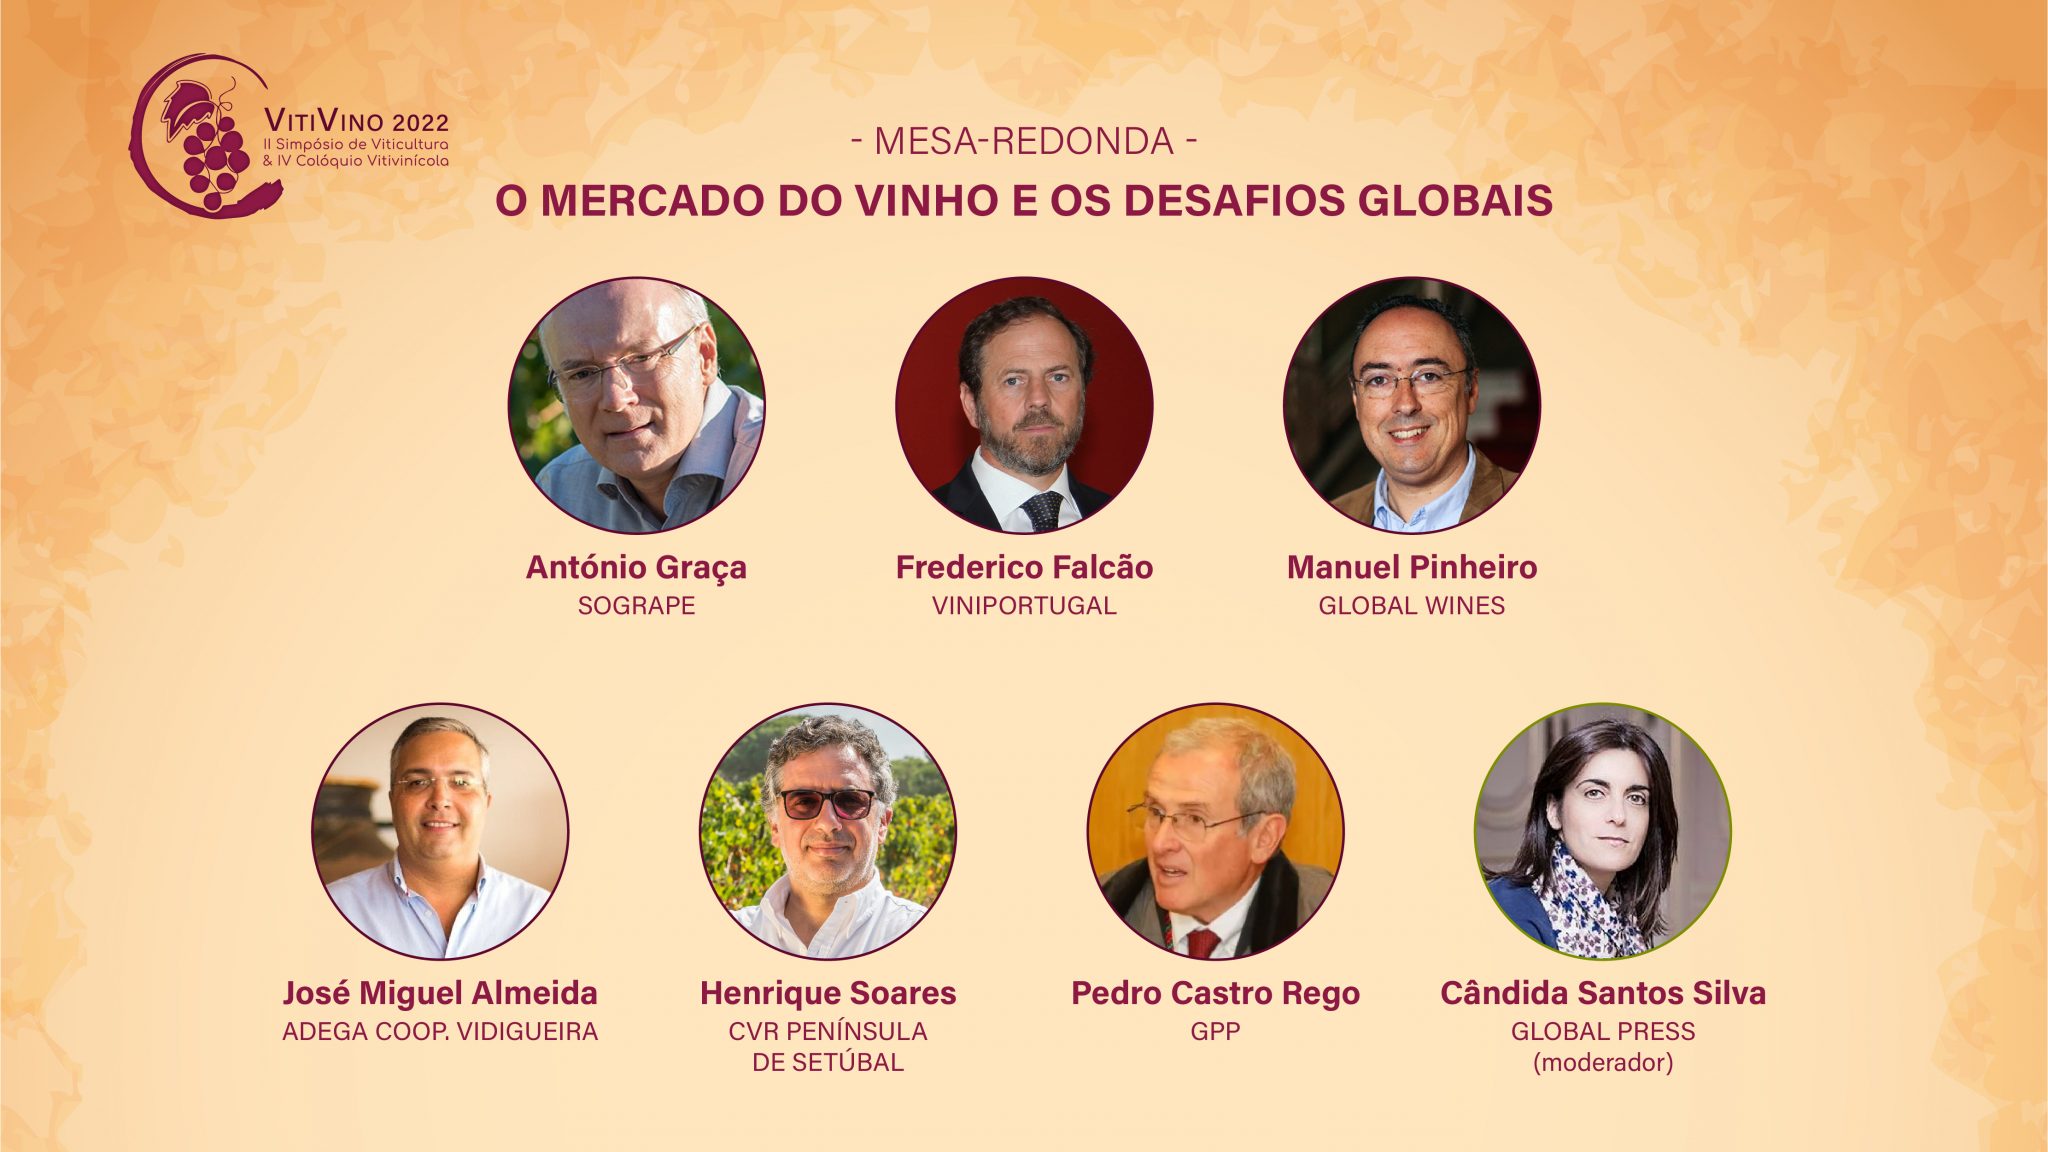 ‘O mercado do vinho e os desafios globais’ em debate no VitiVino 2022